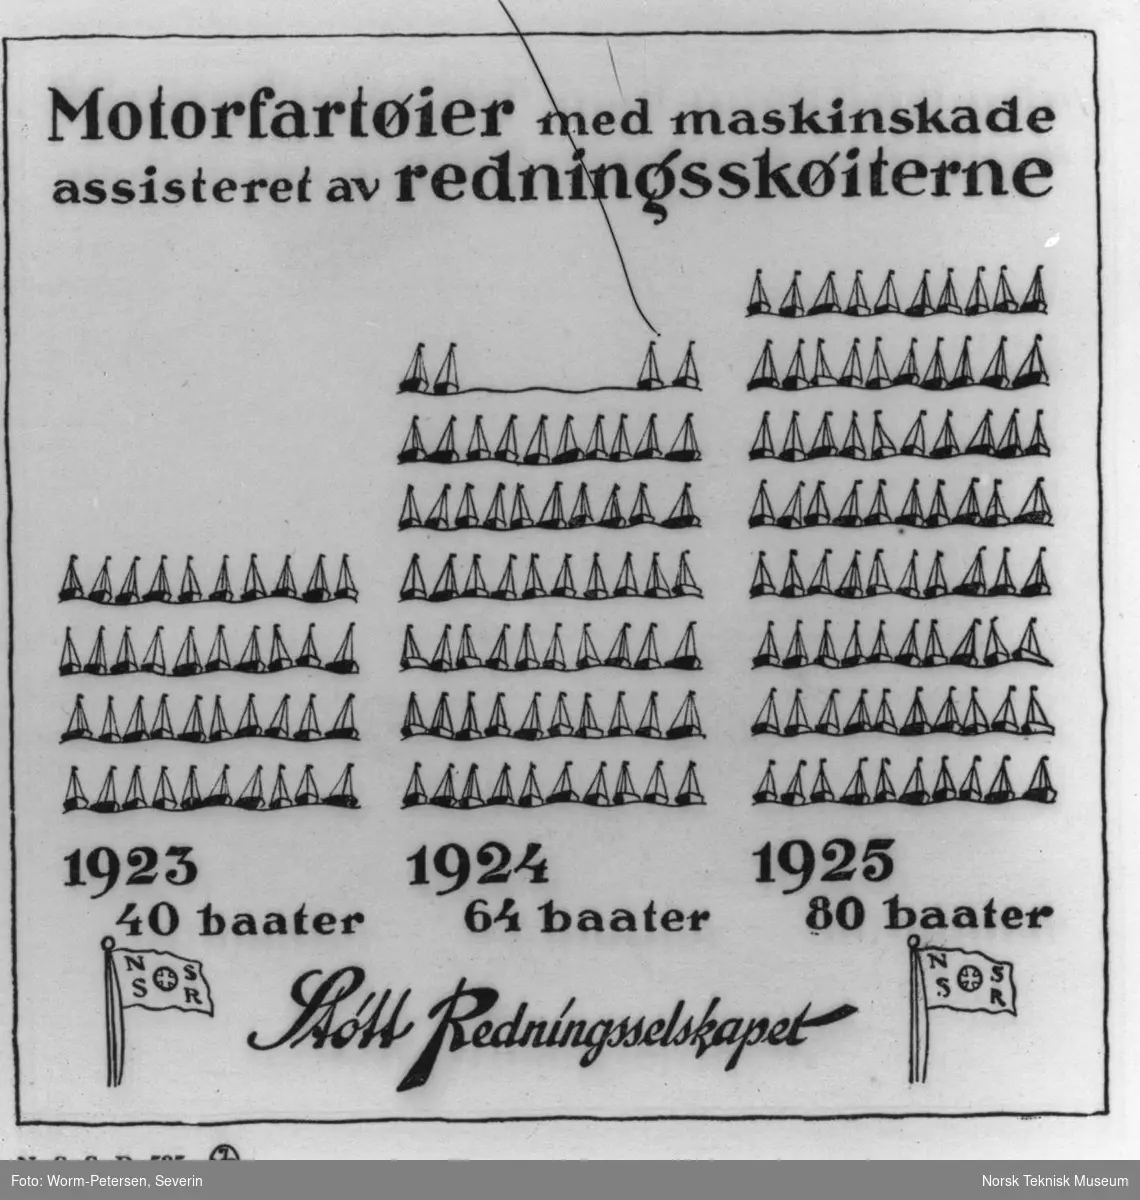 Motorfartøier med maskinskade assisteret av redningsskøiterne, 1923 40 baater, 1924 64 baater 1925 80 baater. Støtt Redningsselskapet